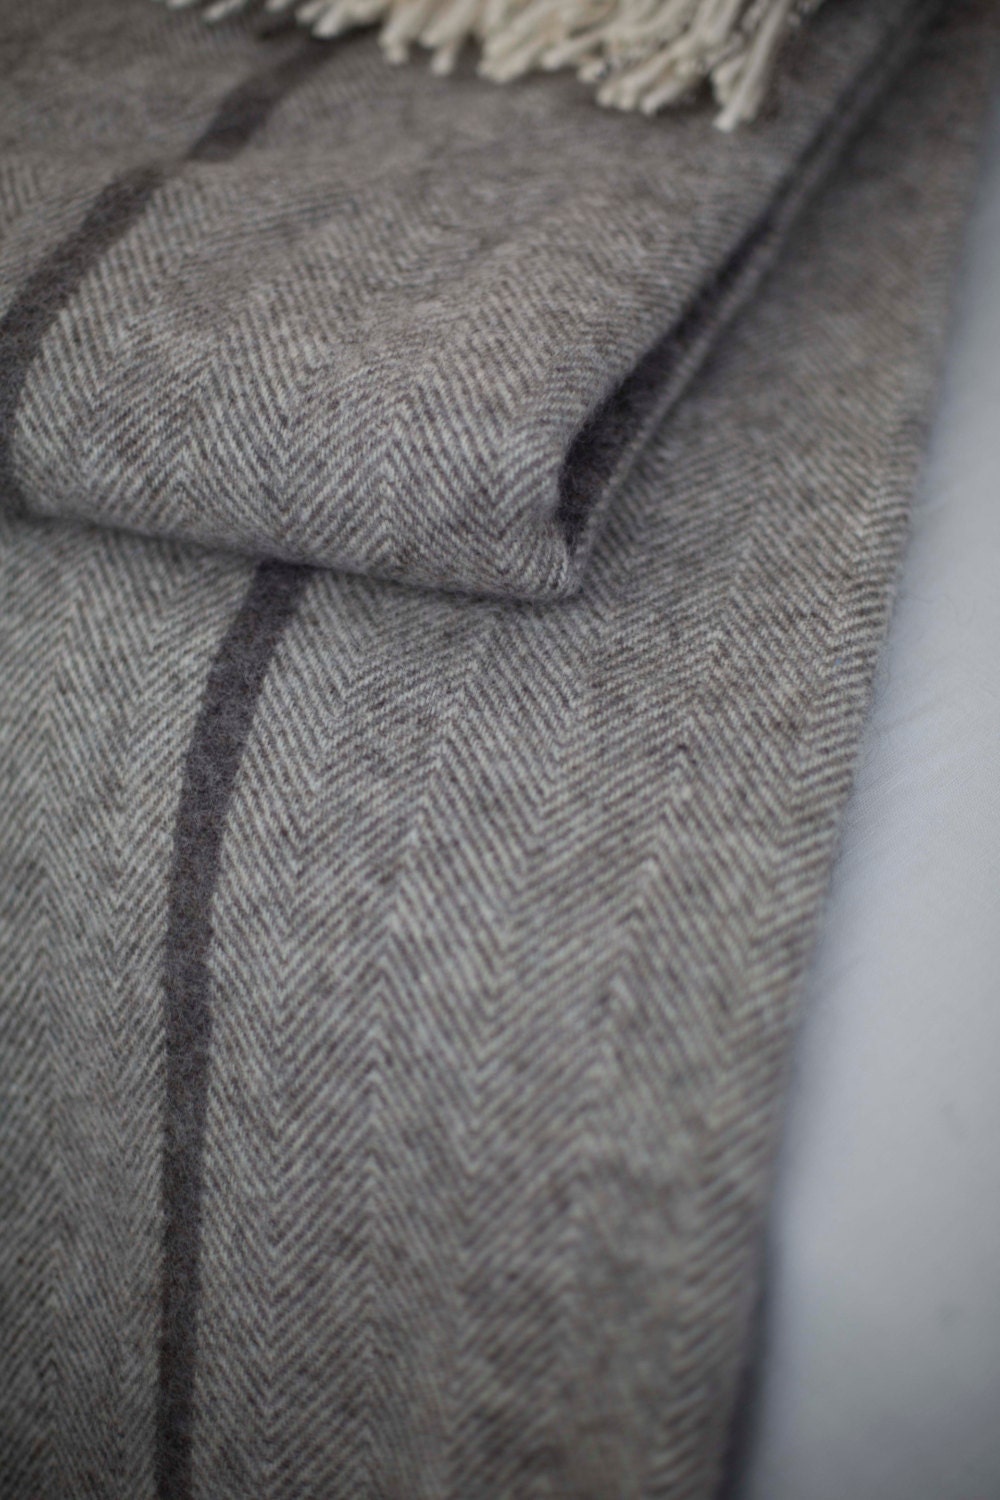 Personalised herringbone weave grey wool blanket with fringes. | Etsy